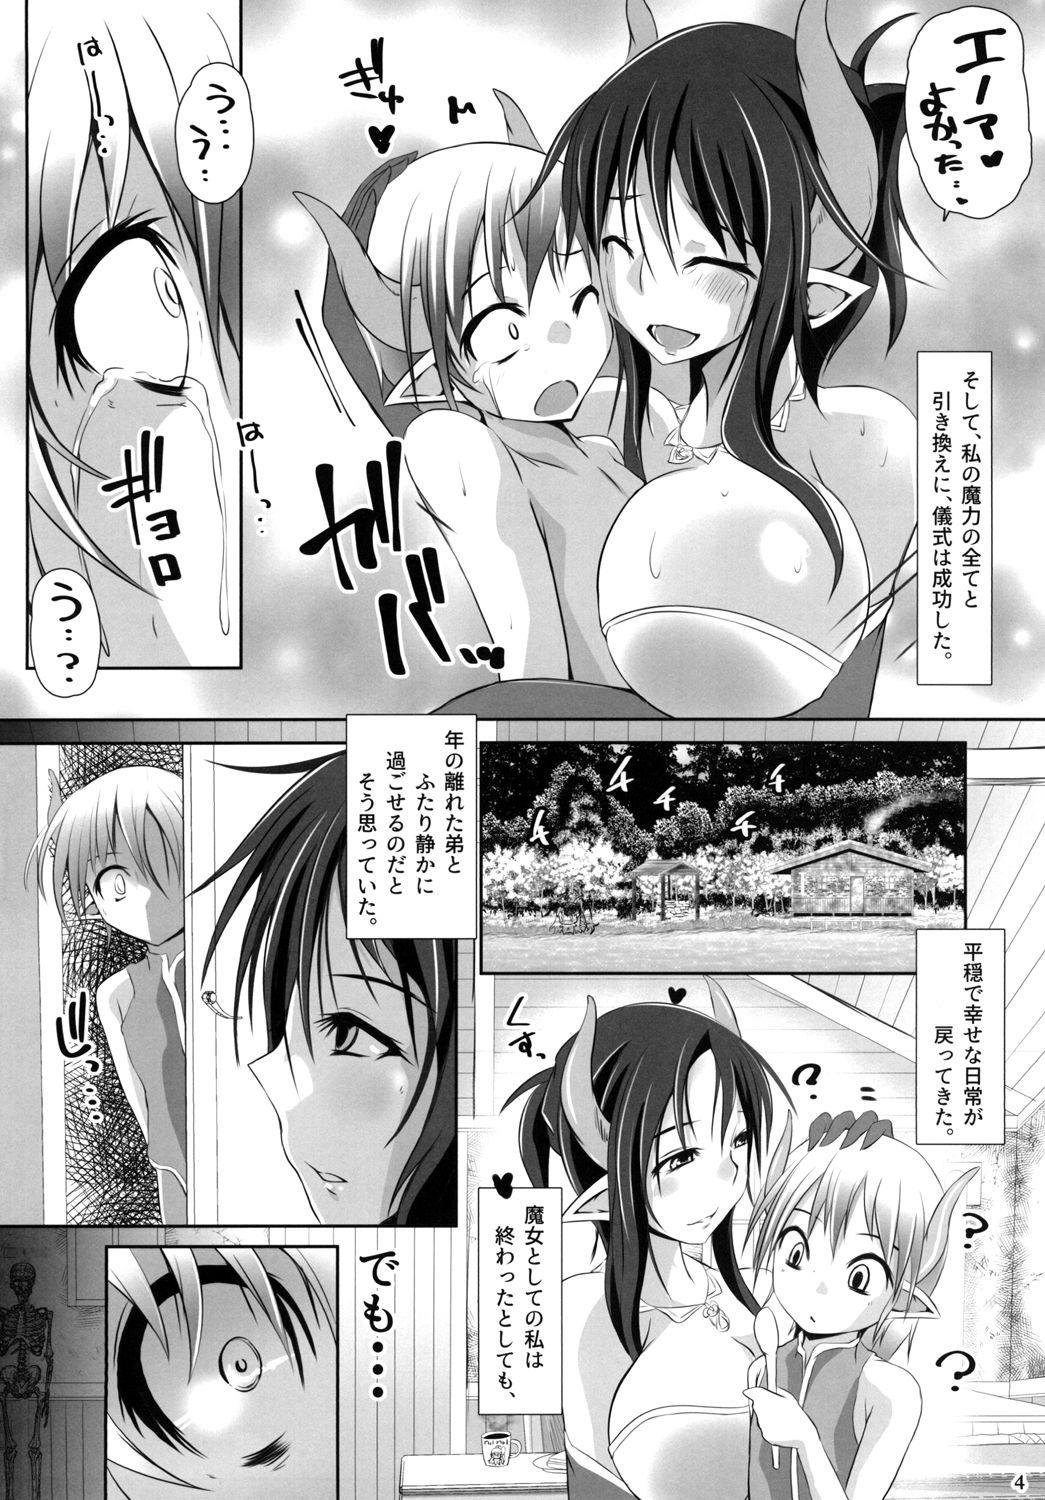 Sentones Ayakashi no Ko Twinks - Page 4